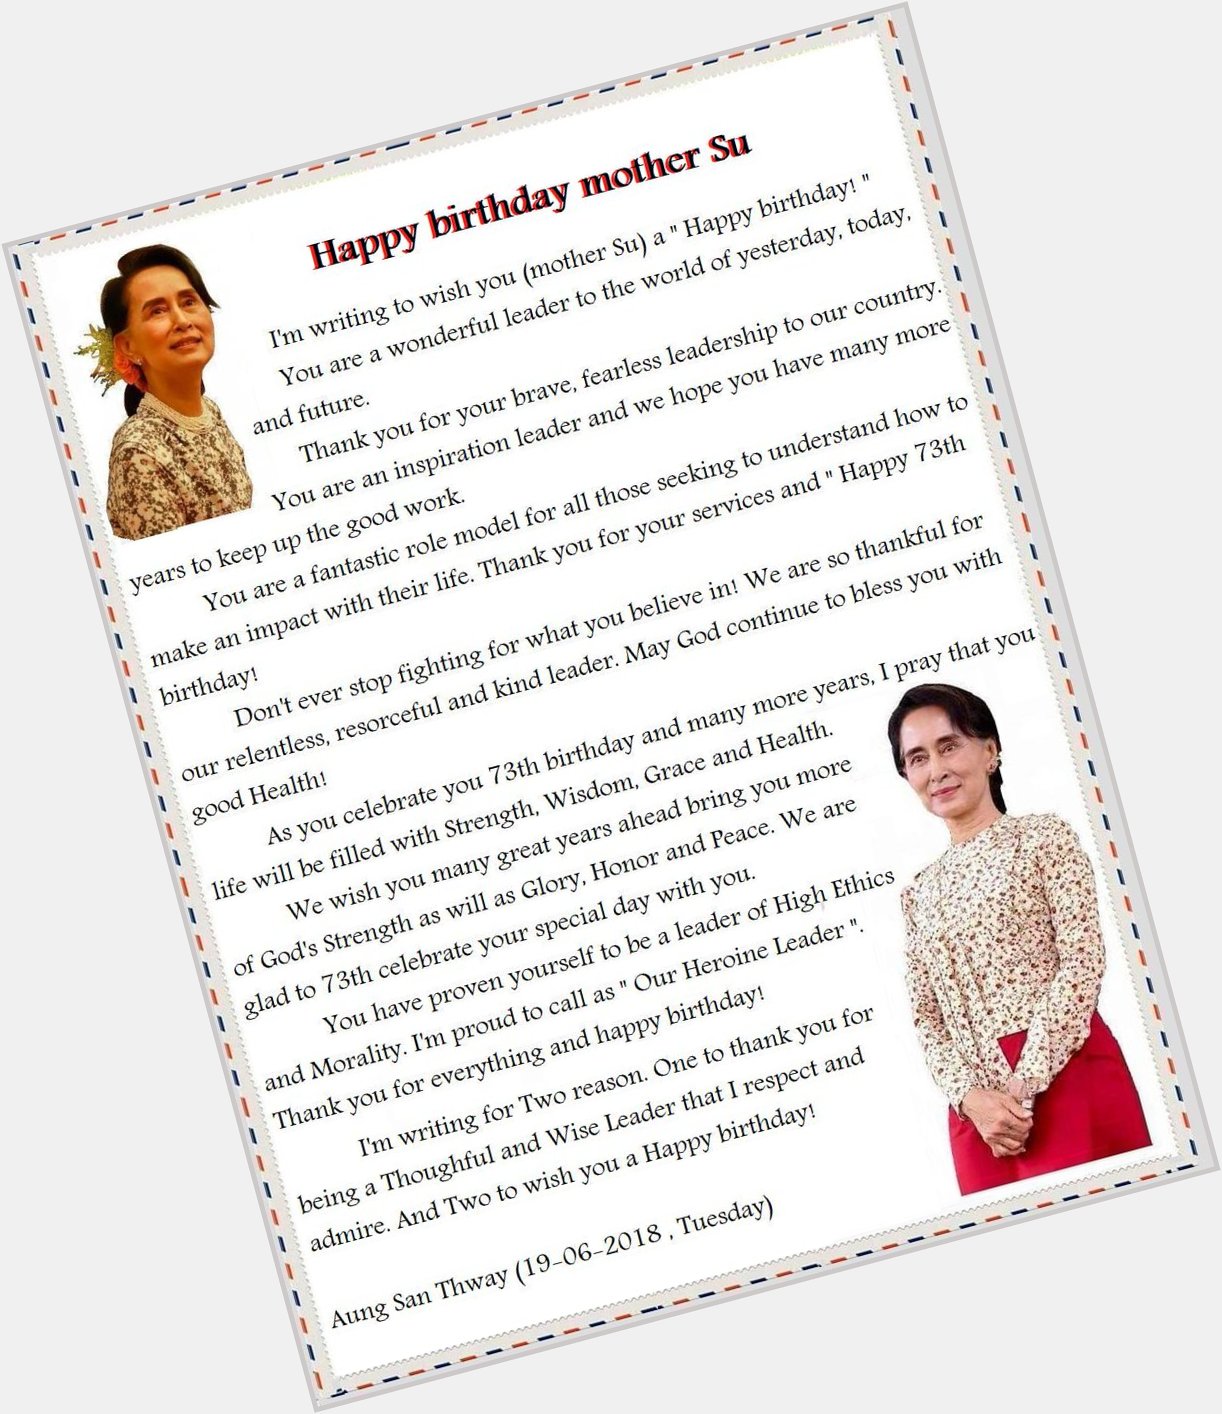 Happy birthday Daw Aung San Suu Kyi
 